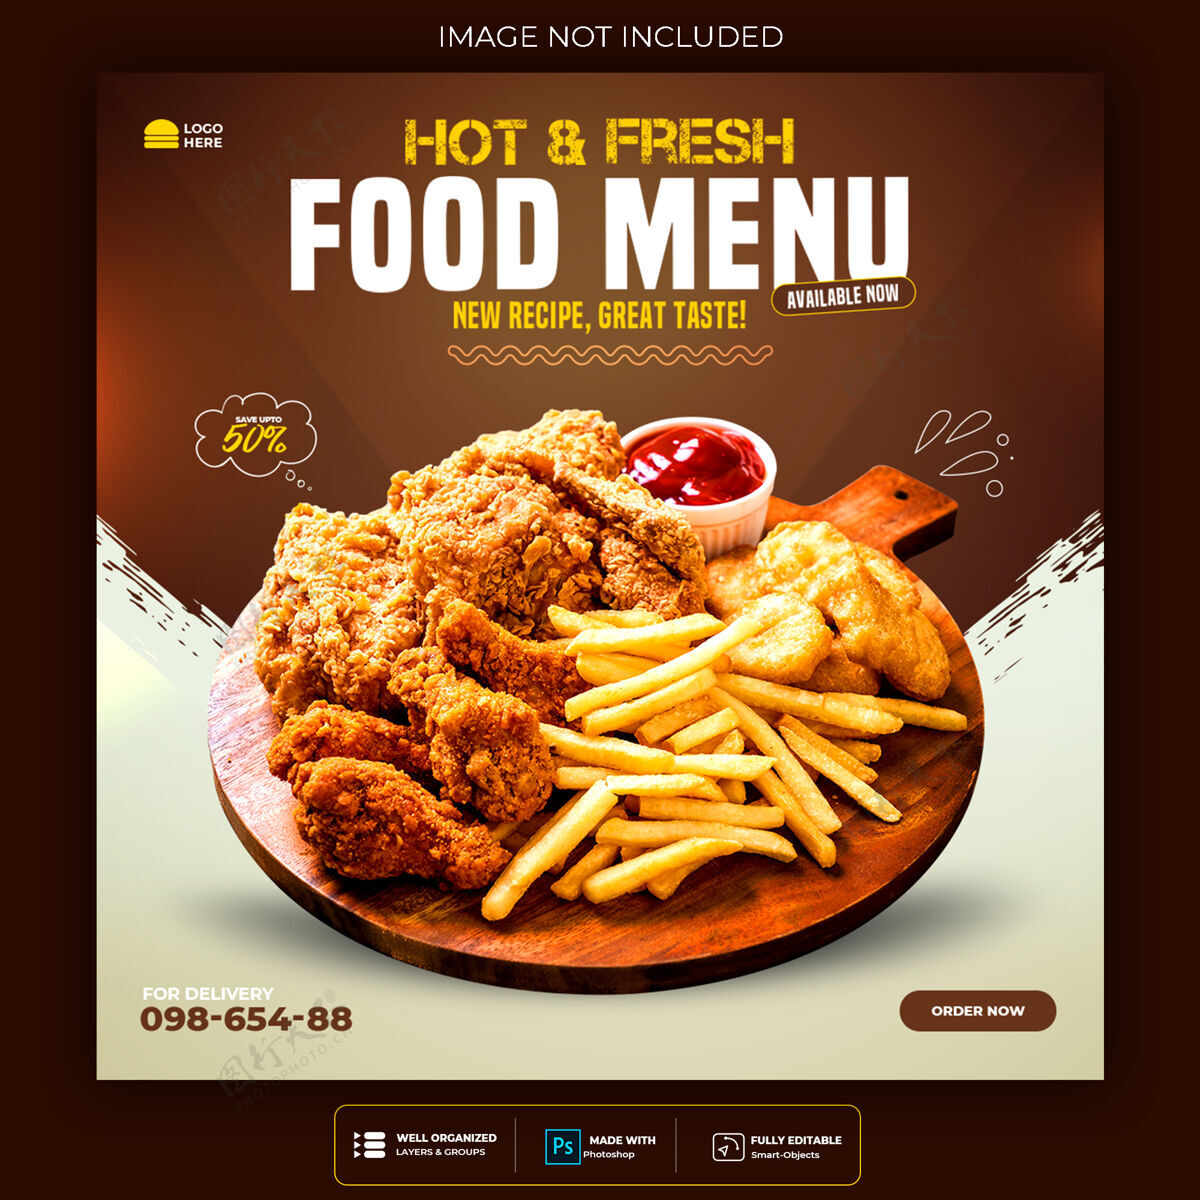 菜单食品社交媒体推广和横幅张贴设计模板广告邮政销售